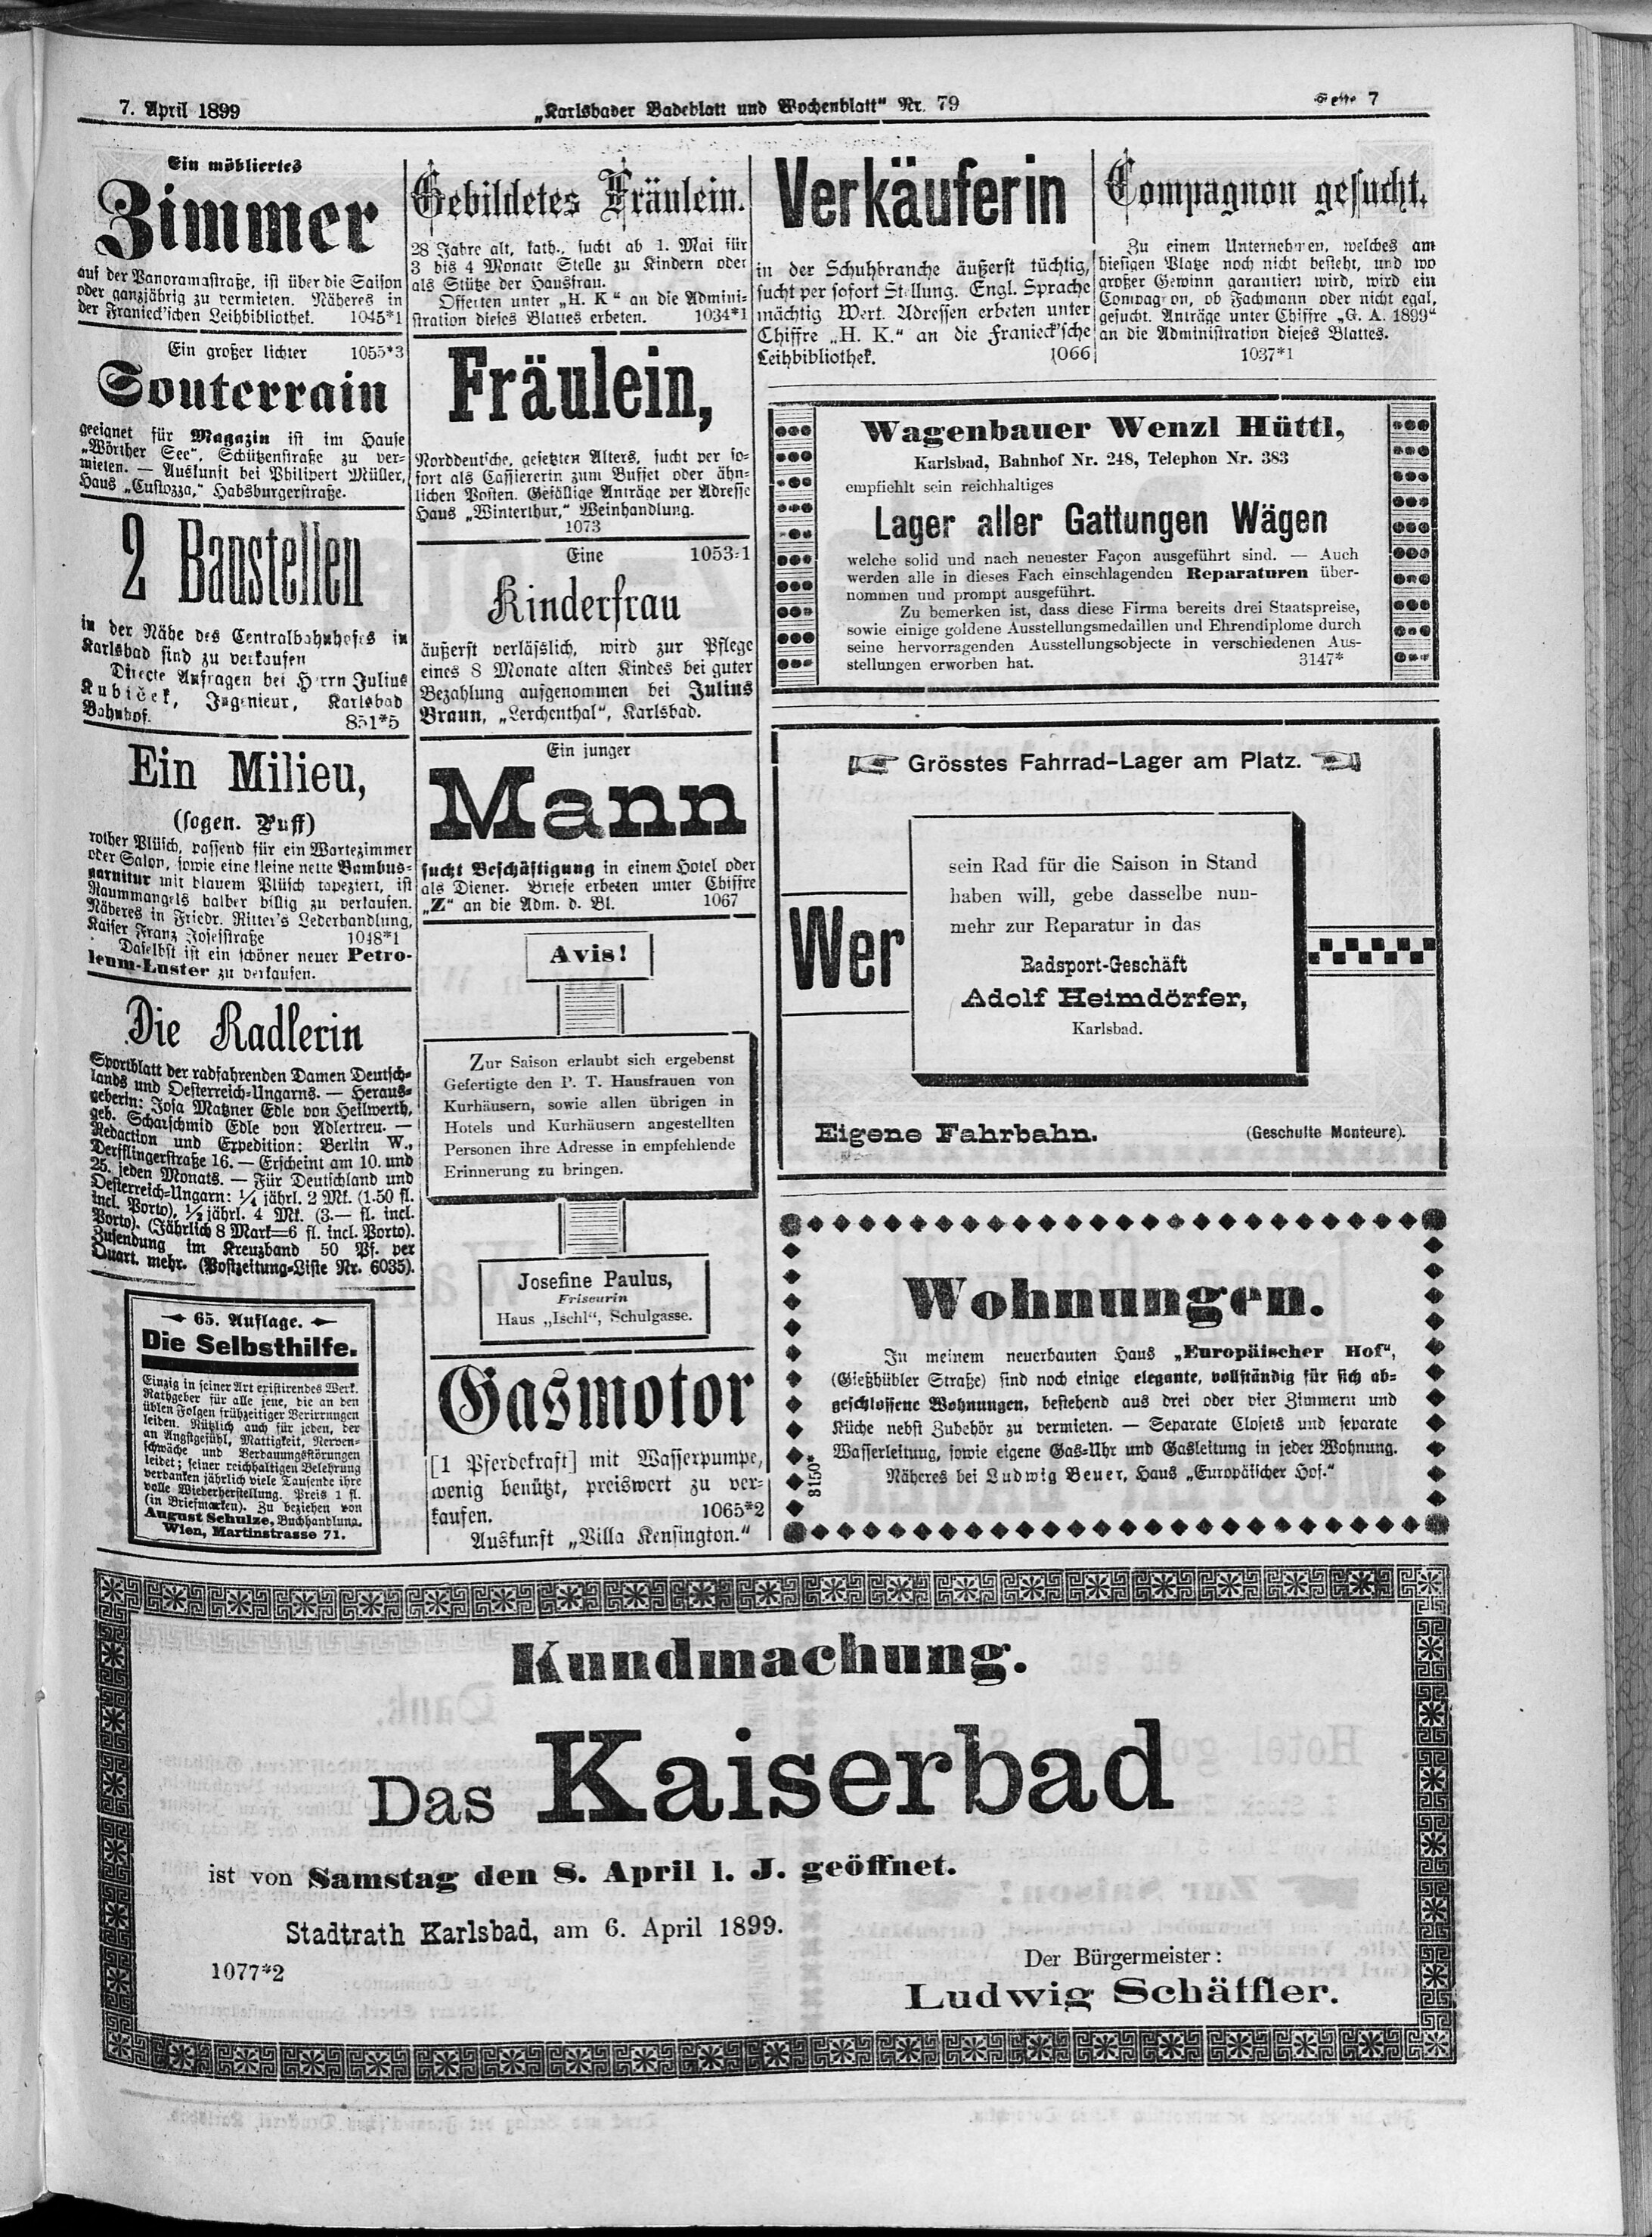 7. karlsbader-badeblatt-1899-04-07-n79_3575